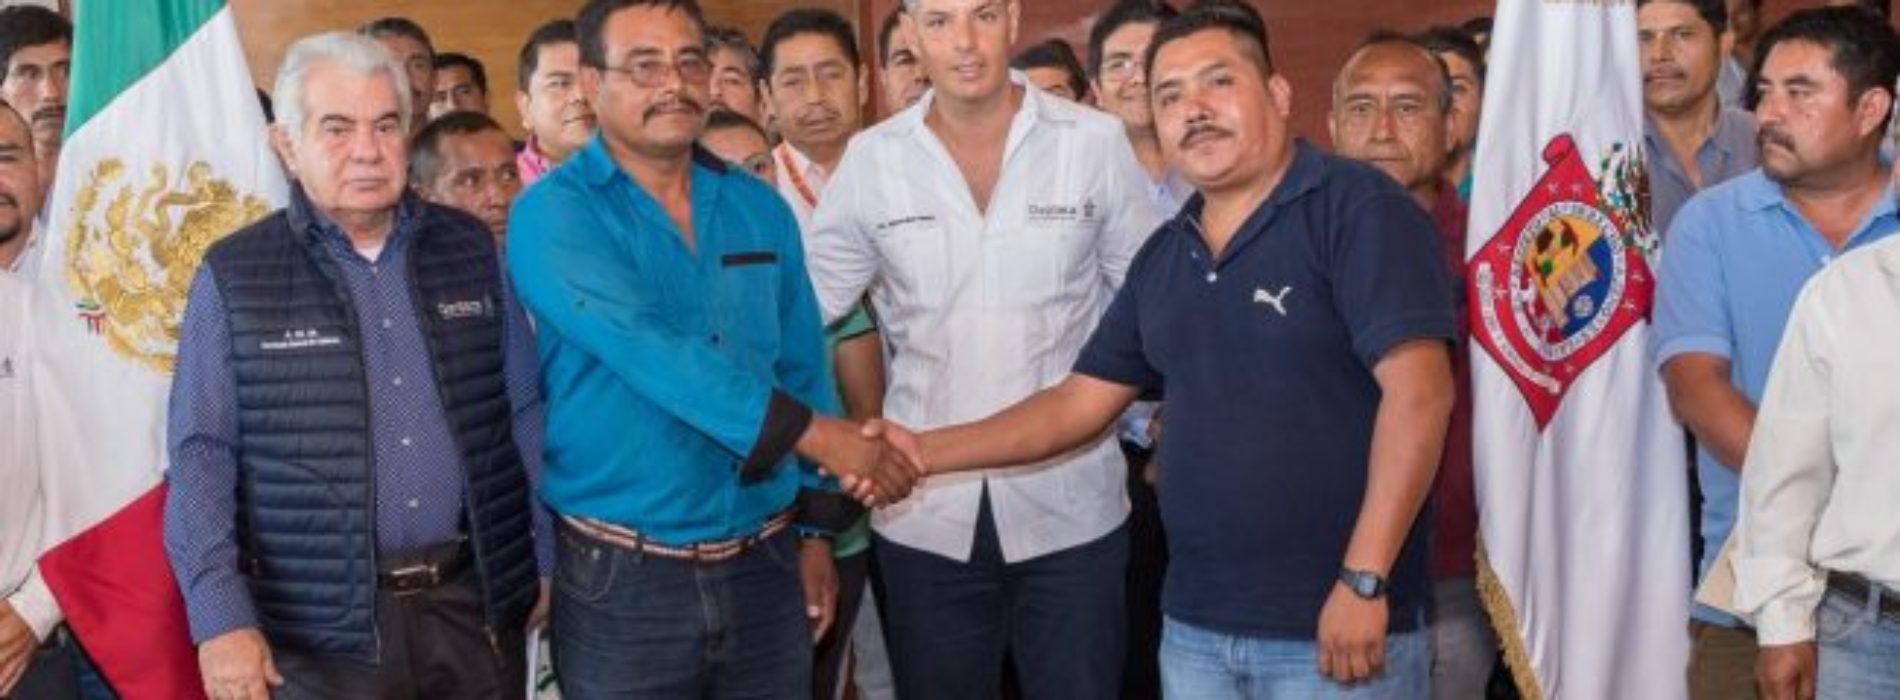 Logra Gobierno de Alejandro Murat acuerdo de paz entre San
Francisco Cahuacua y San Pedro Teozacoalco